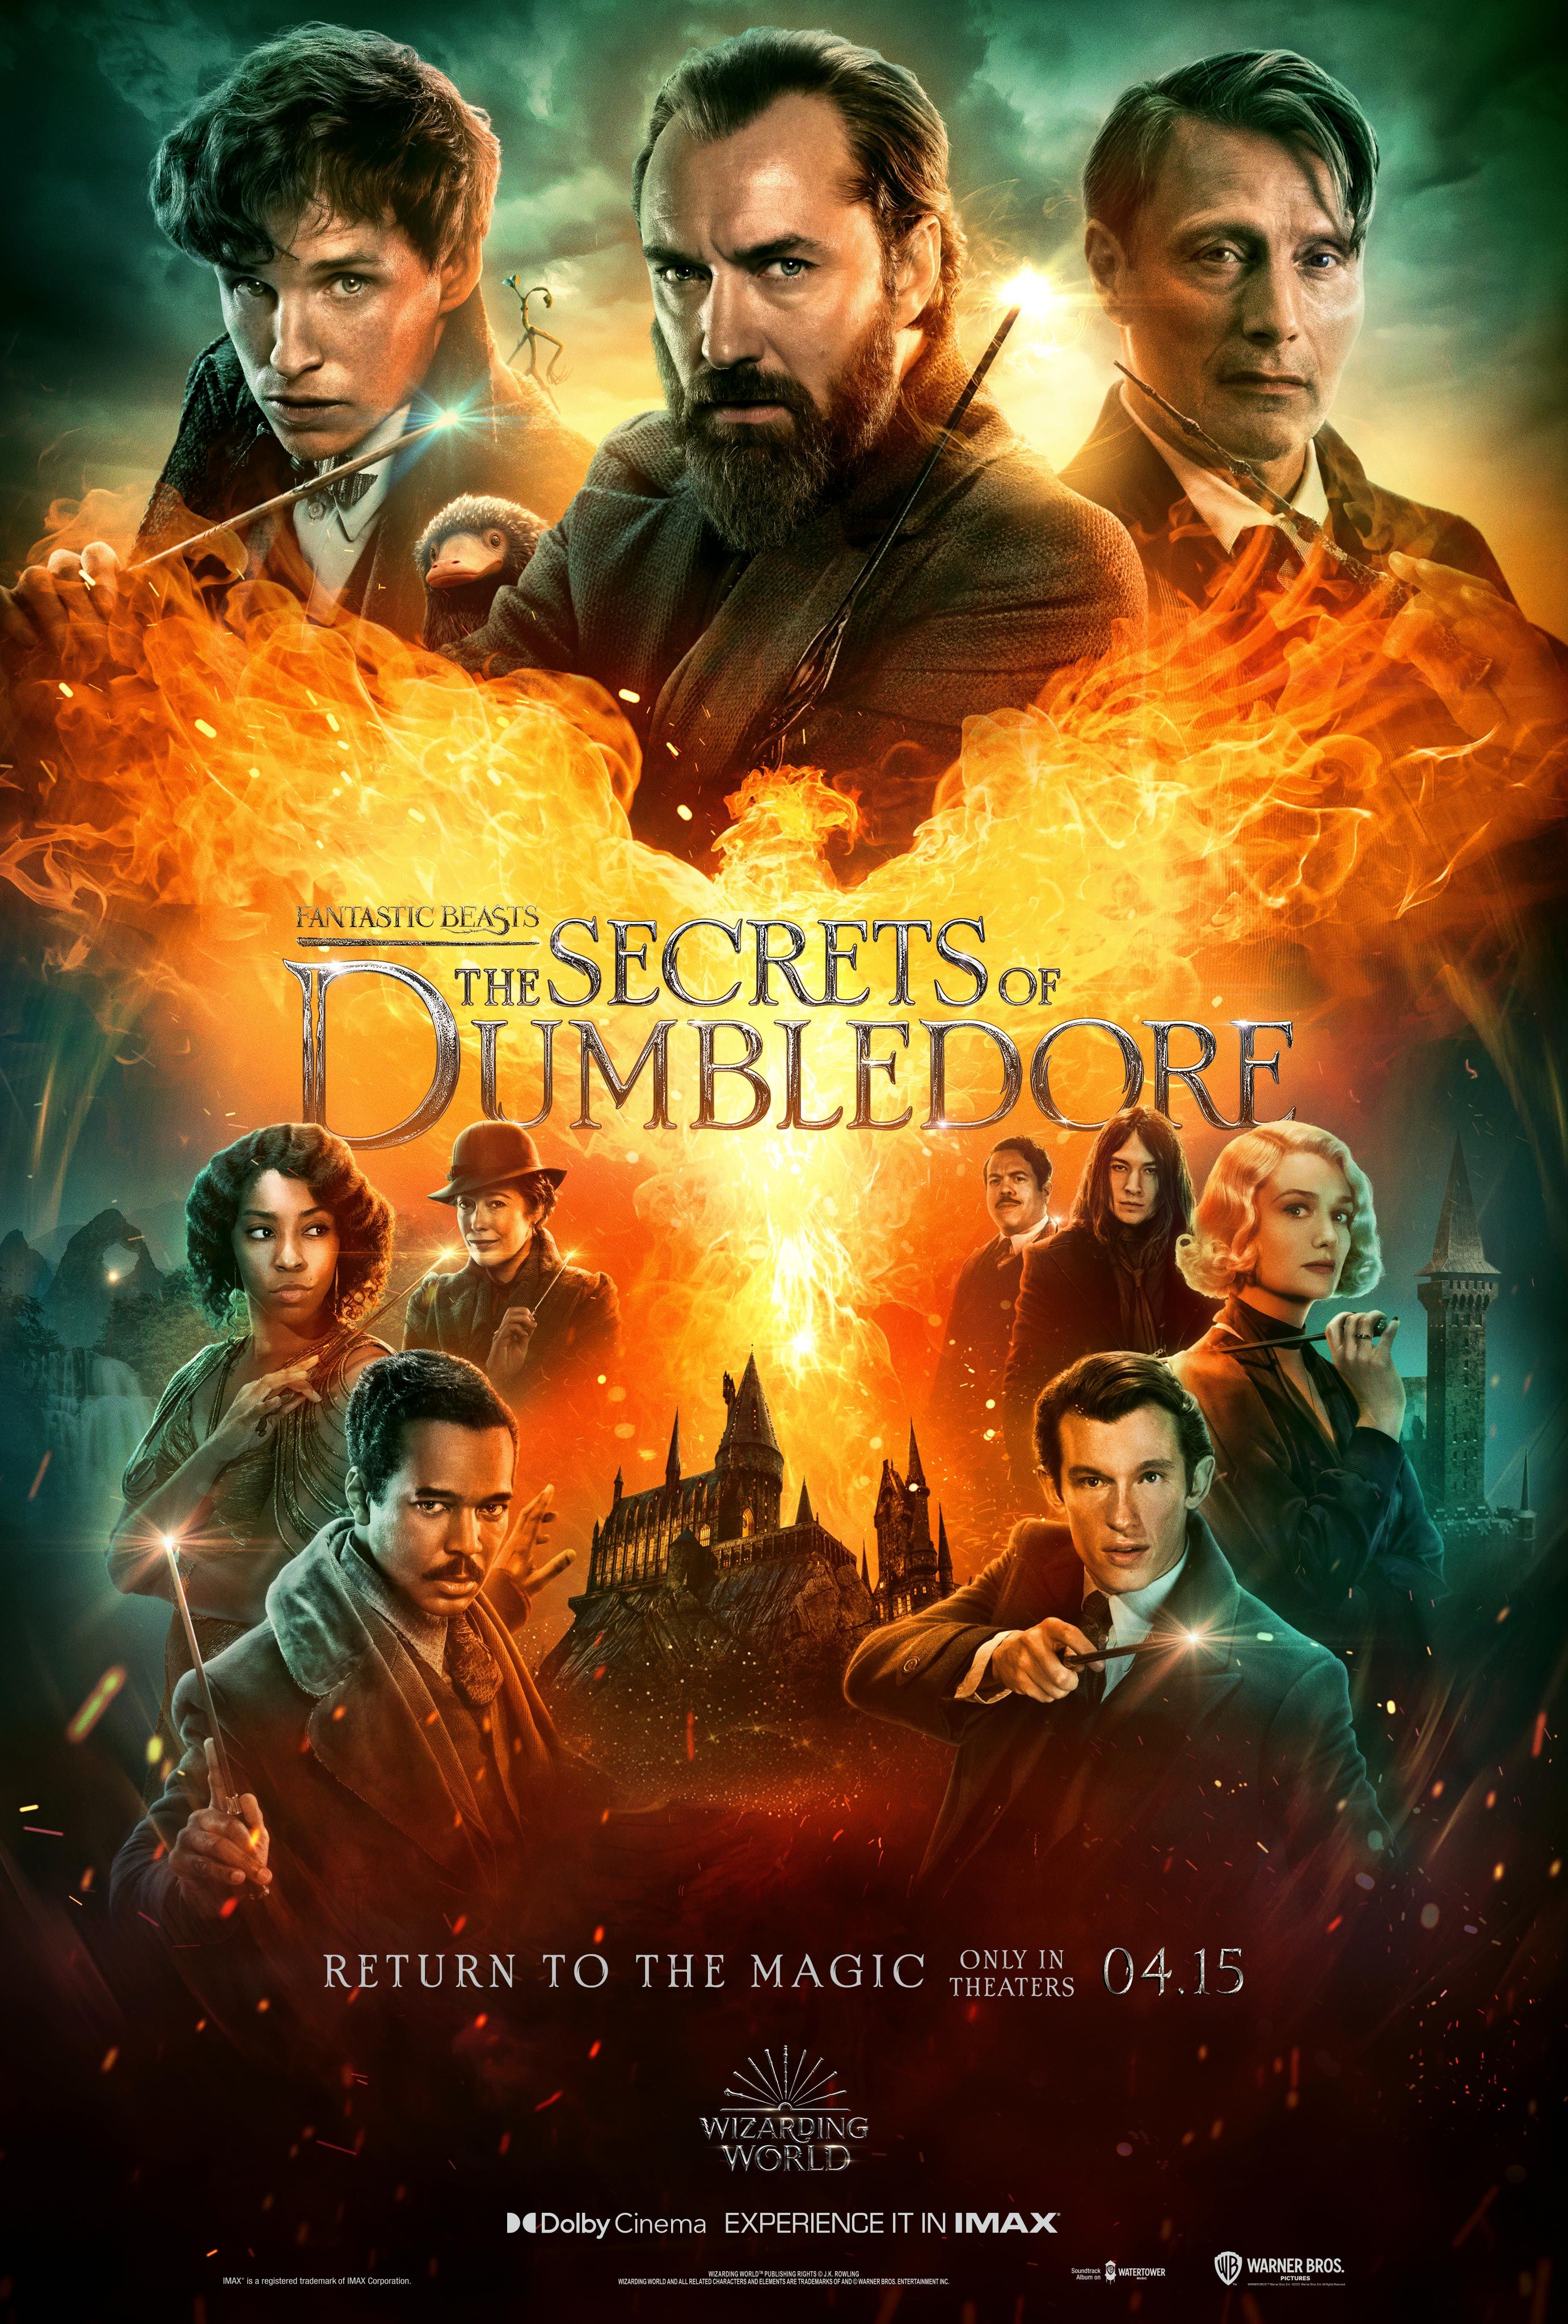 Fantastic Beasts The Secrets of Dumbledore Film Poster